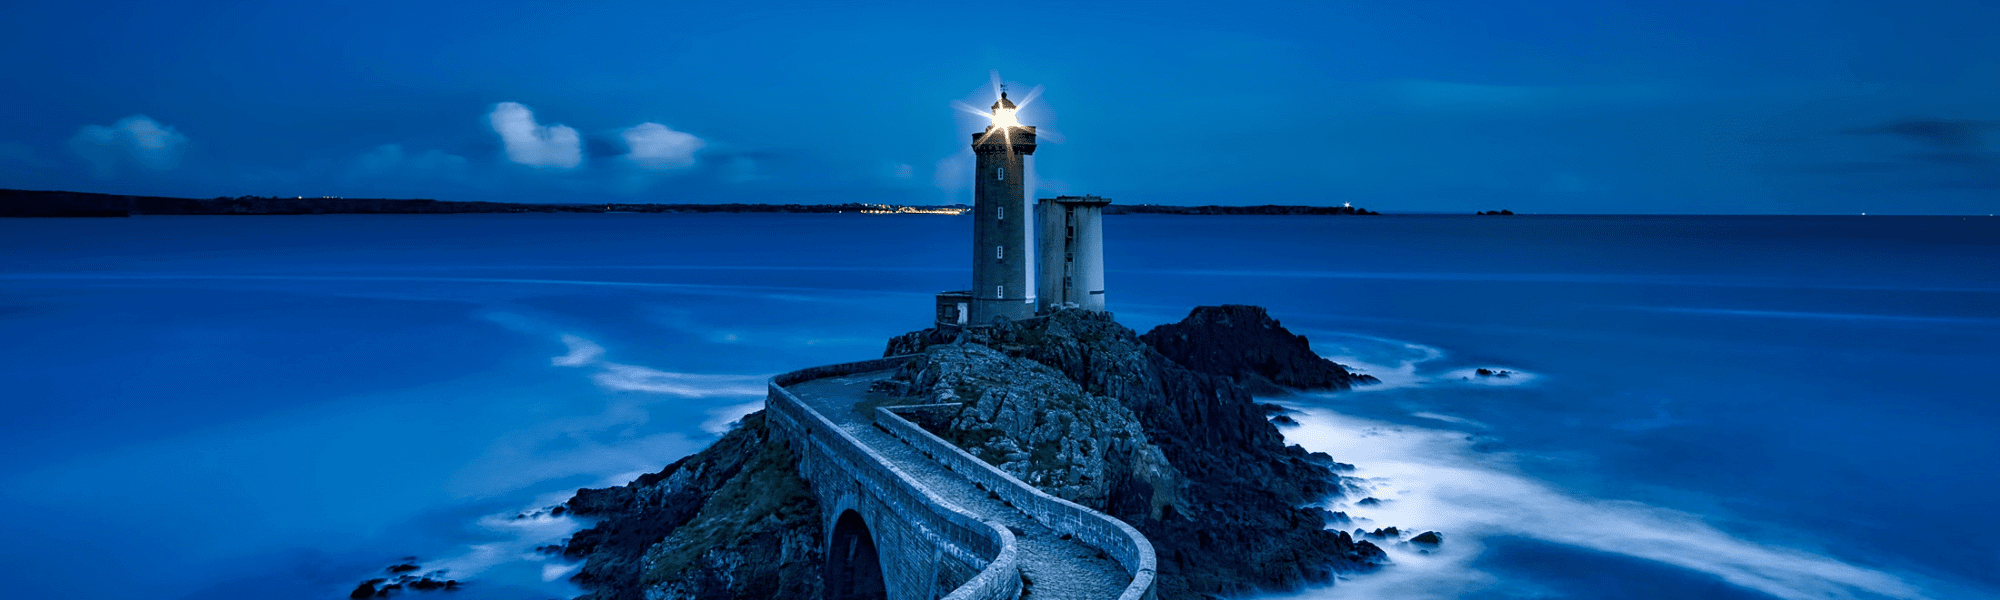 Bild von Leuchturm in der Nacht